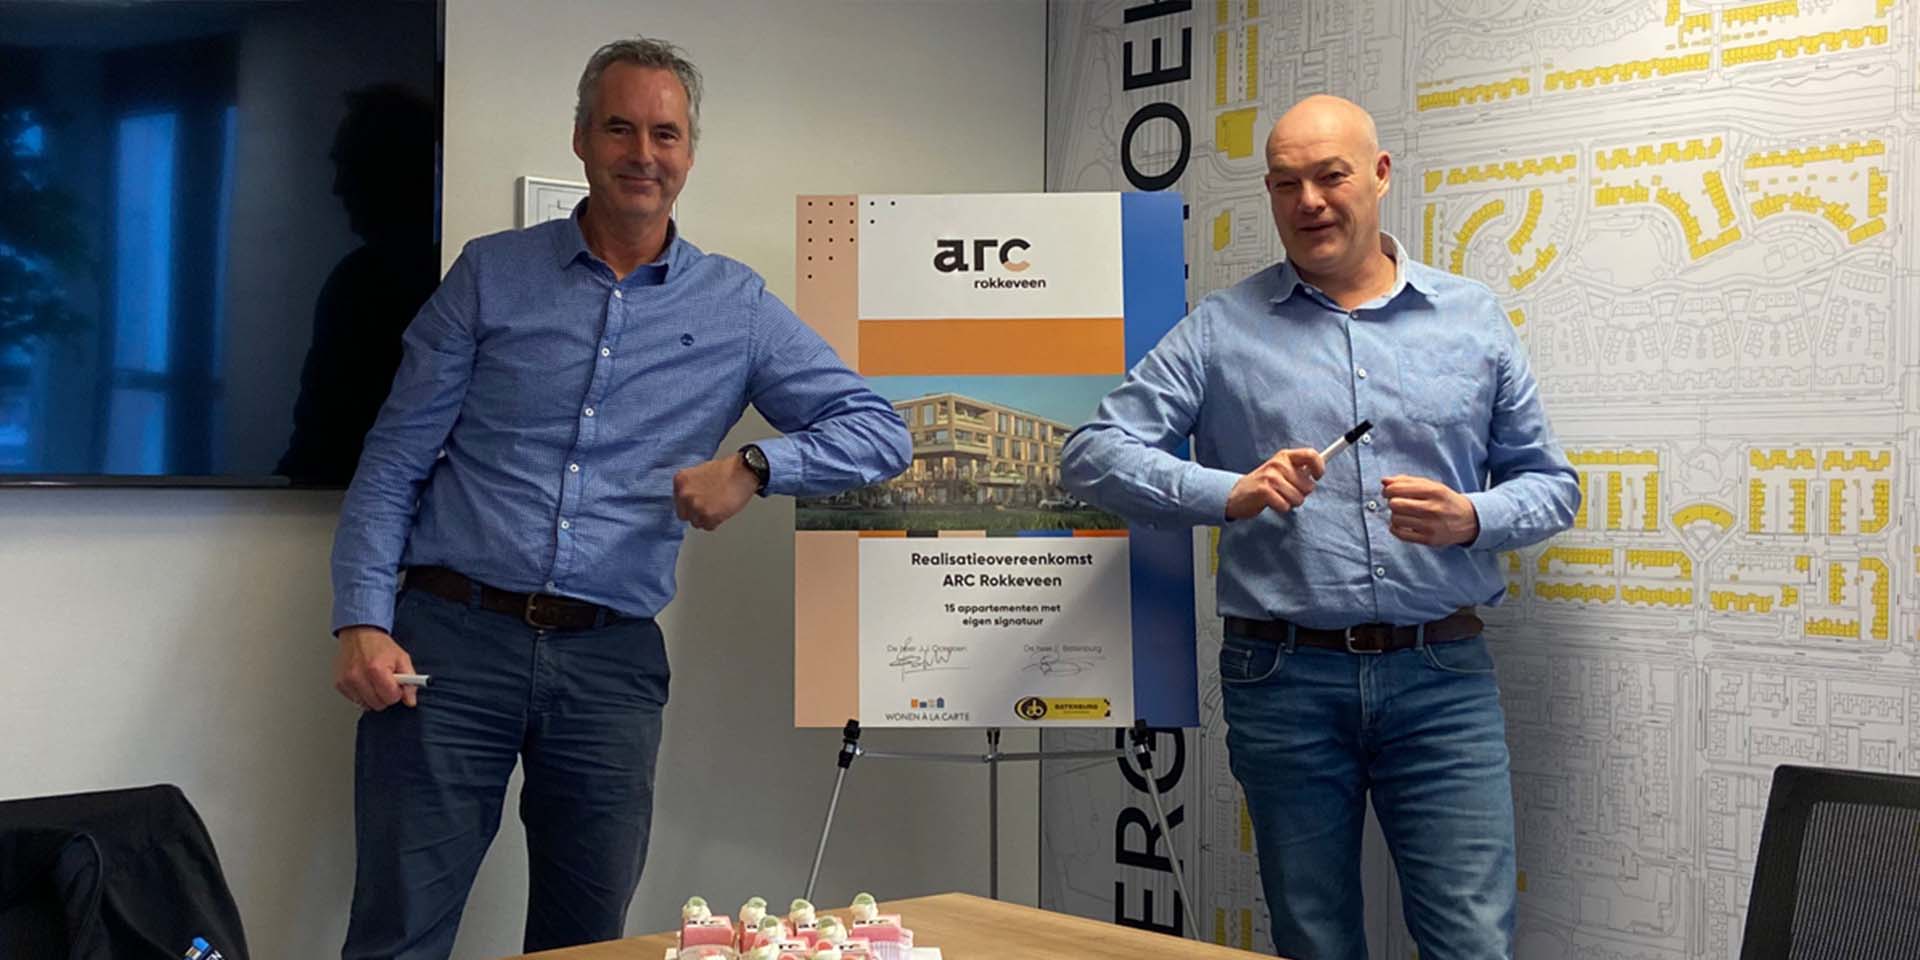 Realisatie-overeenkomst ARC Rokkeveen in Zoetermeer getekend : Realisatie-overeenkomst ARC Rokkeveen in Zoetermeer getekend